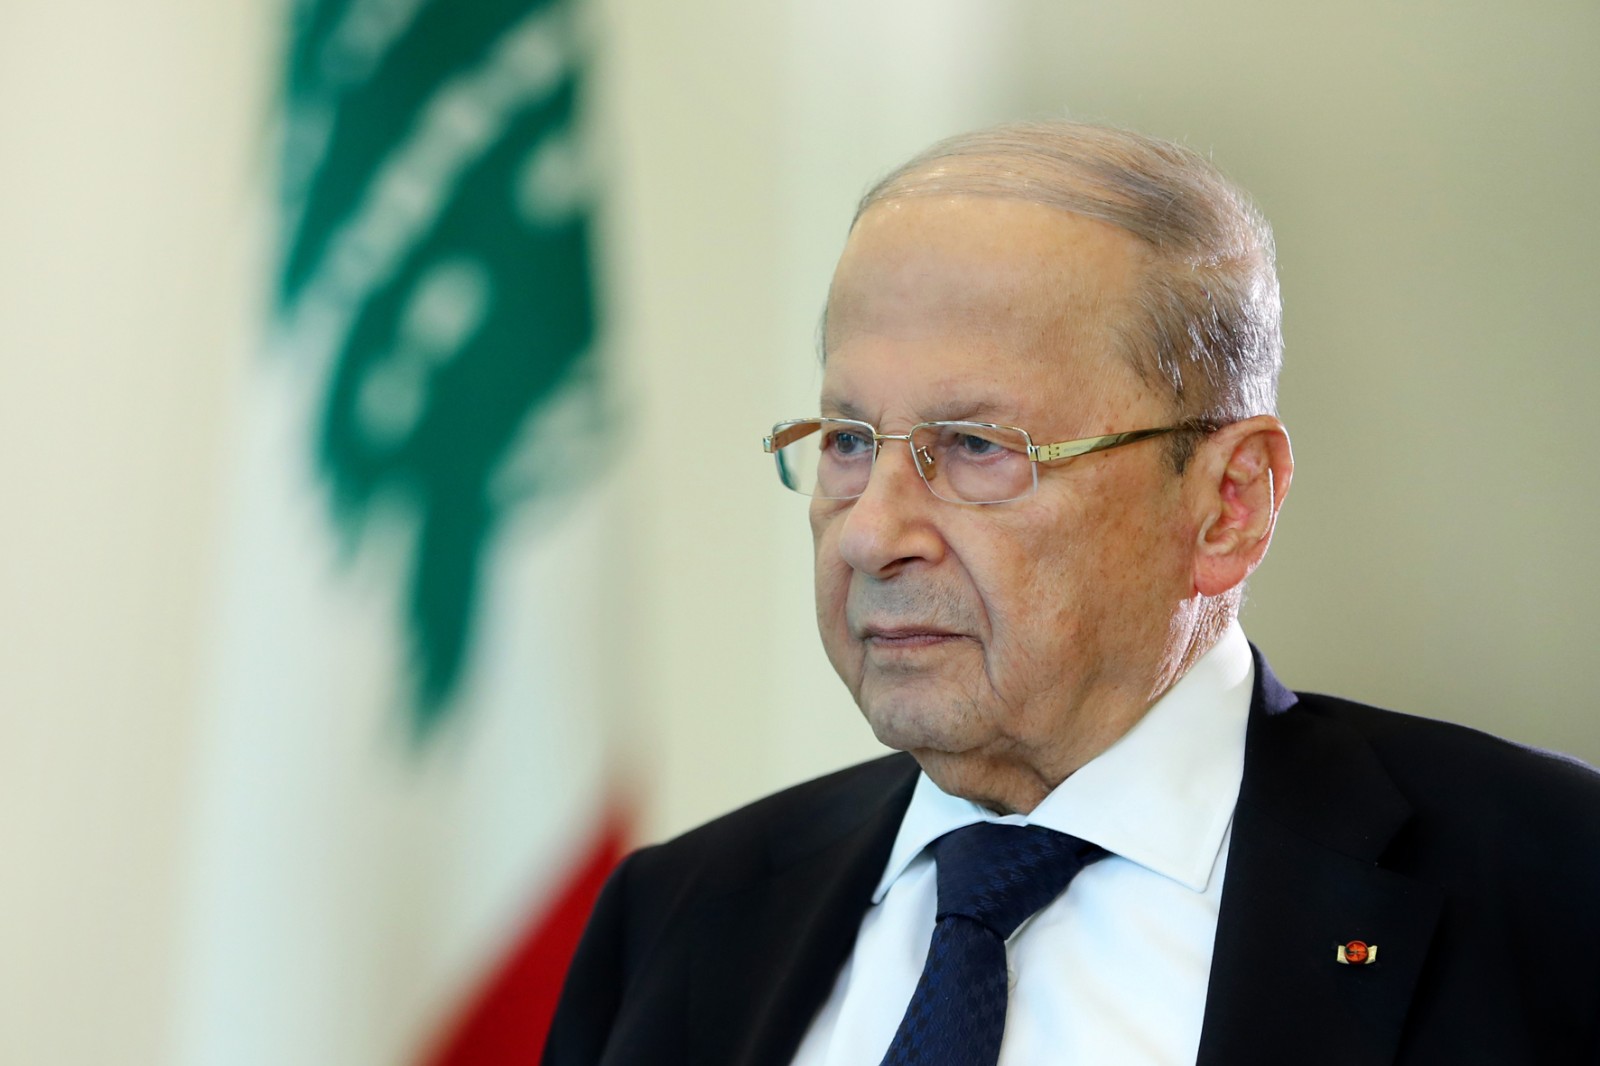 黎巴嫩总统责令候任总理立即组阁没能力组建救国政府就下台